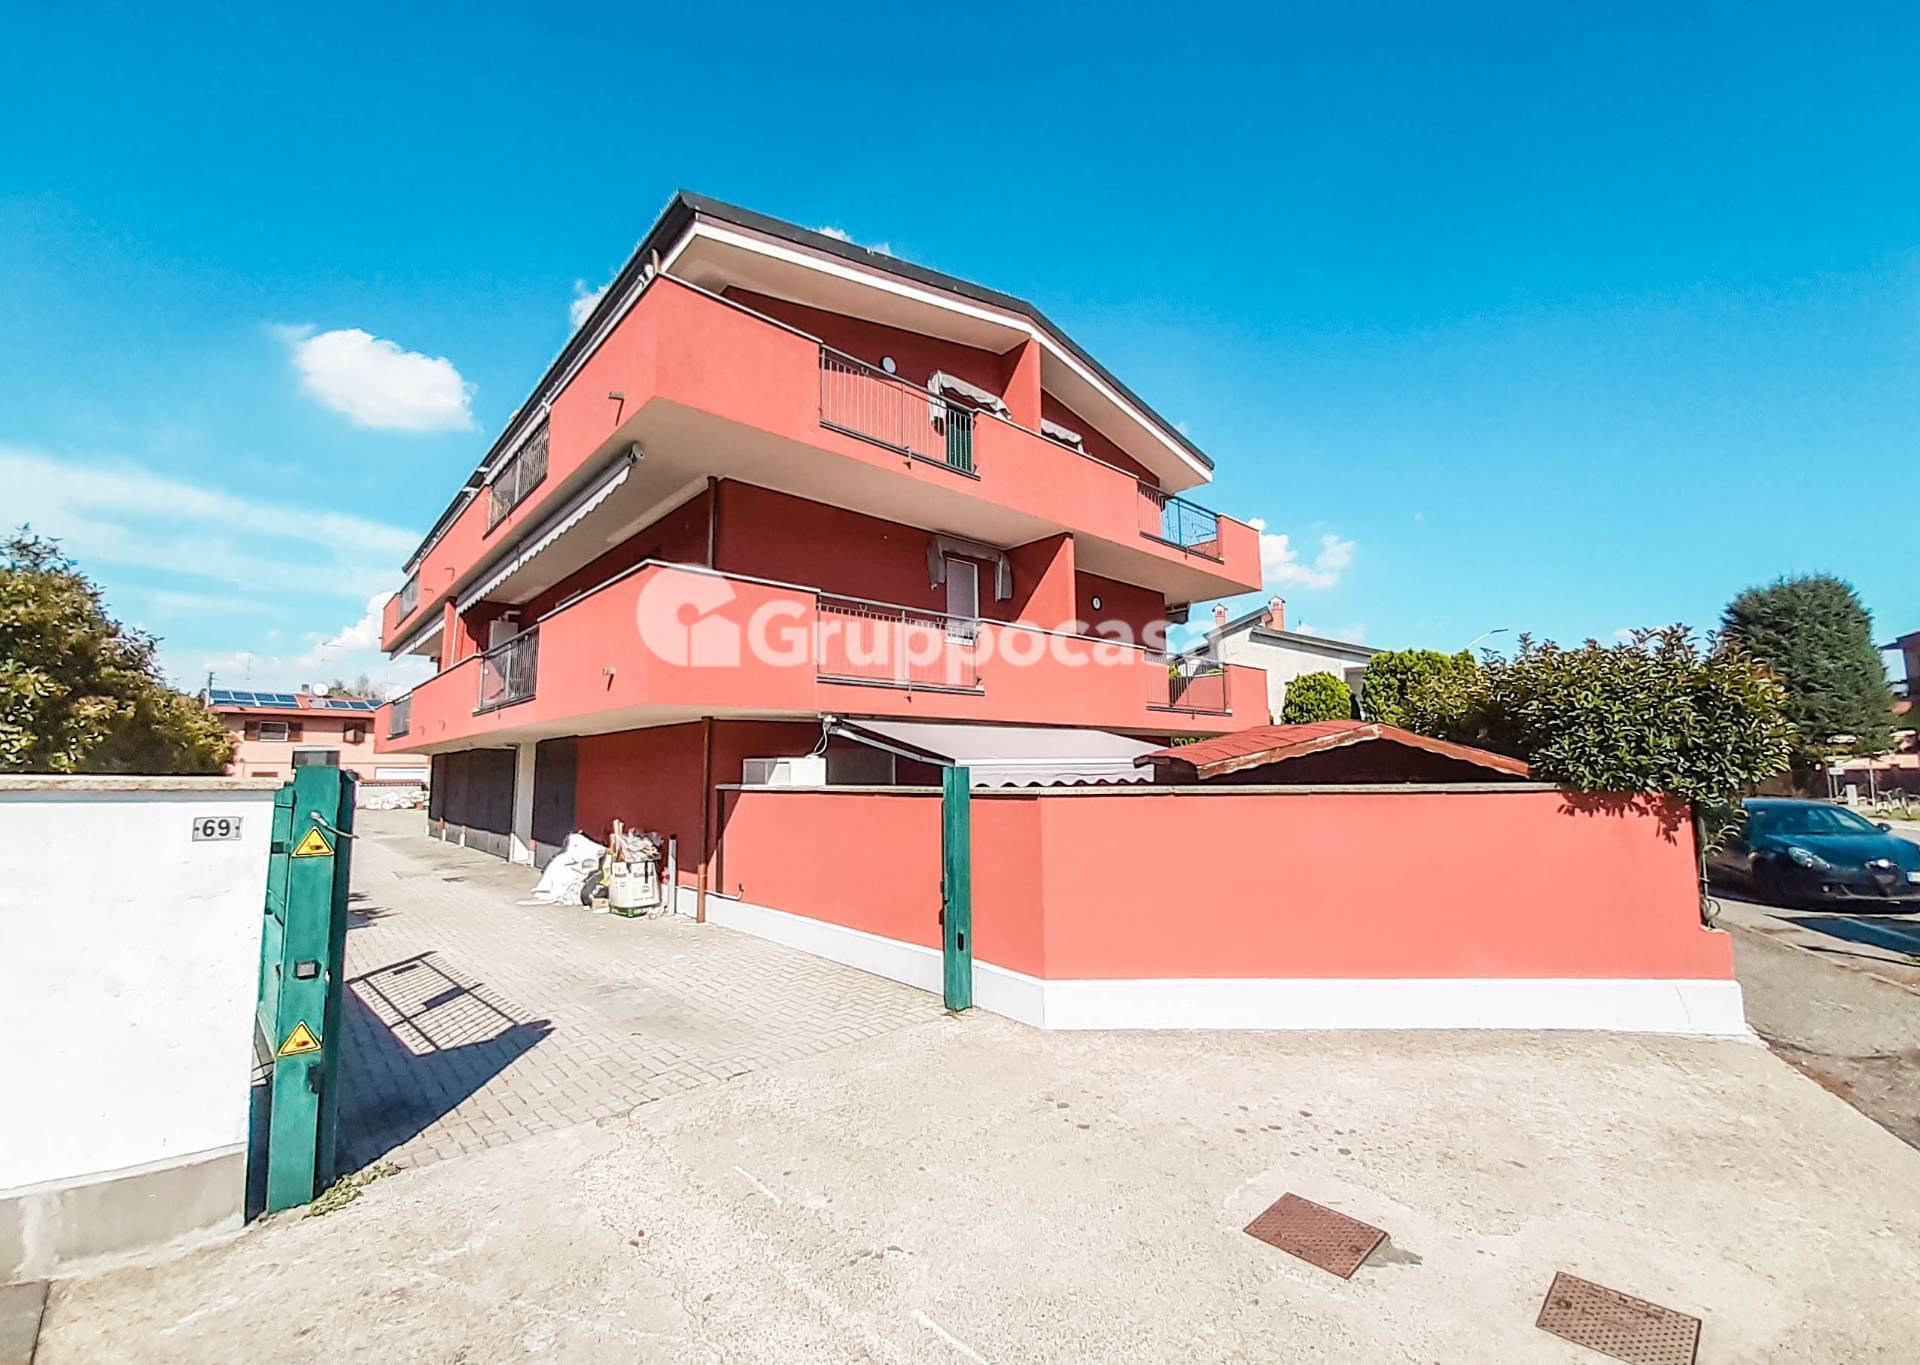 Appartamento in vendita a Corbetta, 2 locali, prezzo € 96.000 | PortaleAgenzieImmobiliari.it